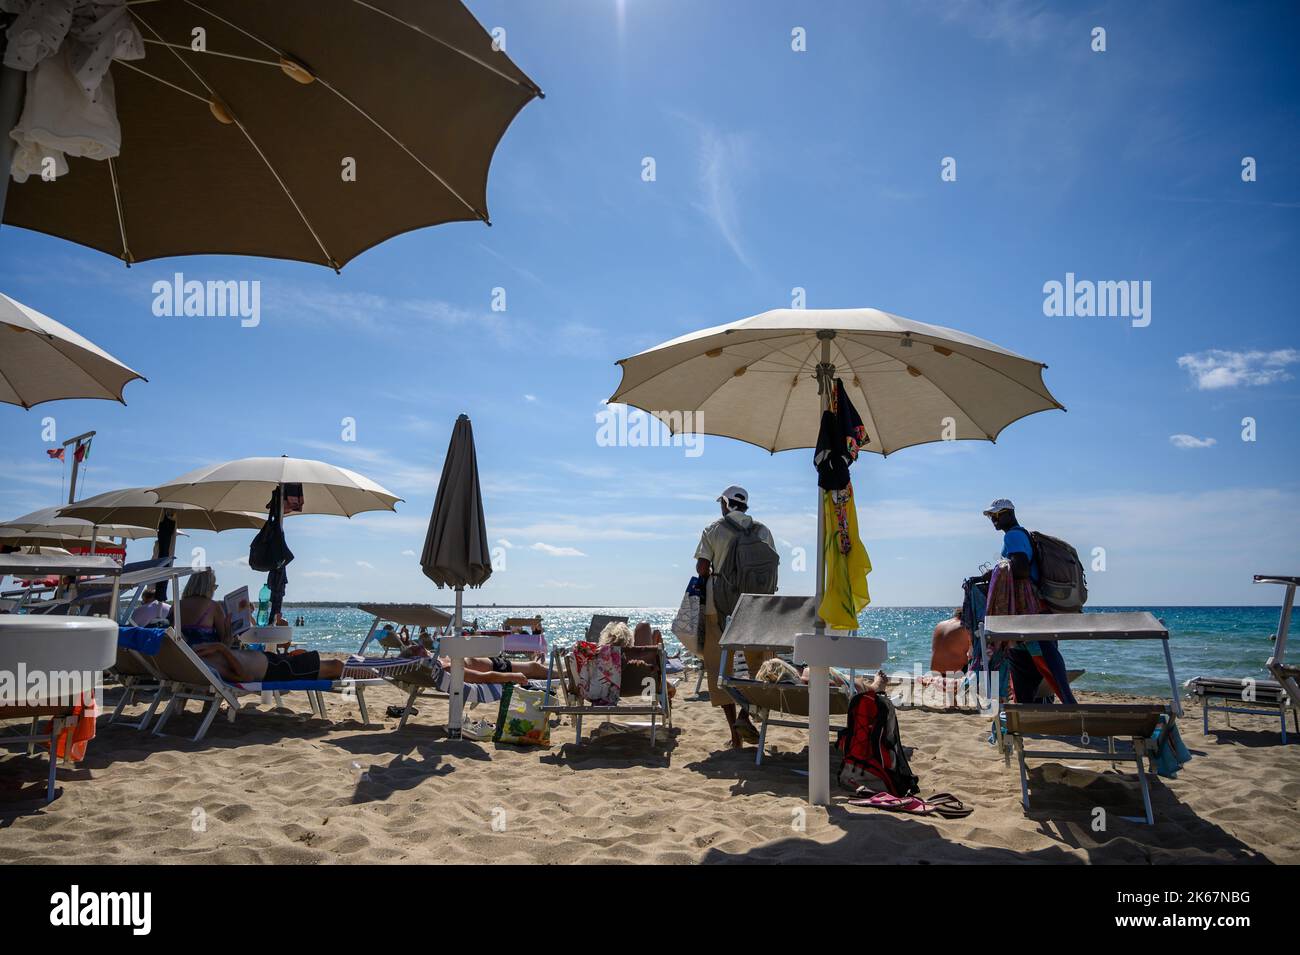 Deux vendeurs de plage qui marchent parmi les baigneurs offrant leurs produits à la plage de Sottovento vers la fin de la saison. Gallipoli, Pouilles, Italie. Banque D'Images